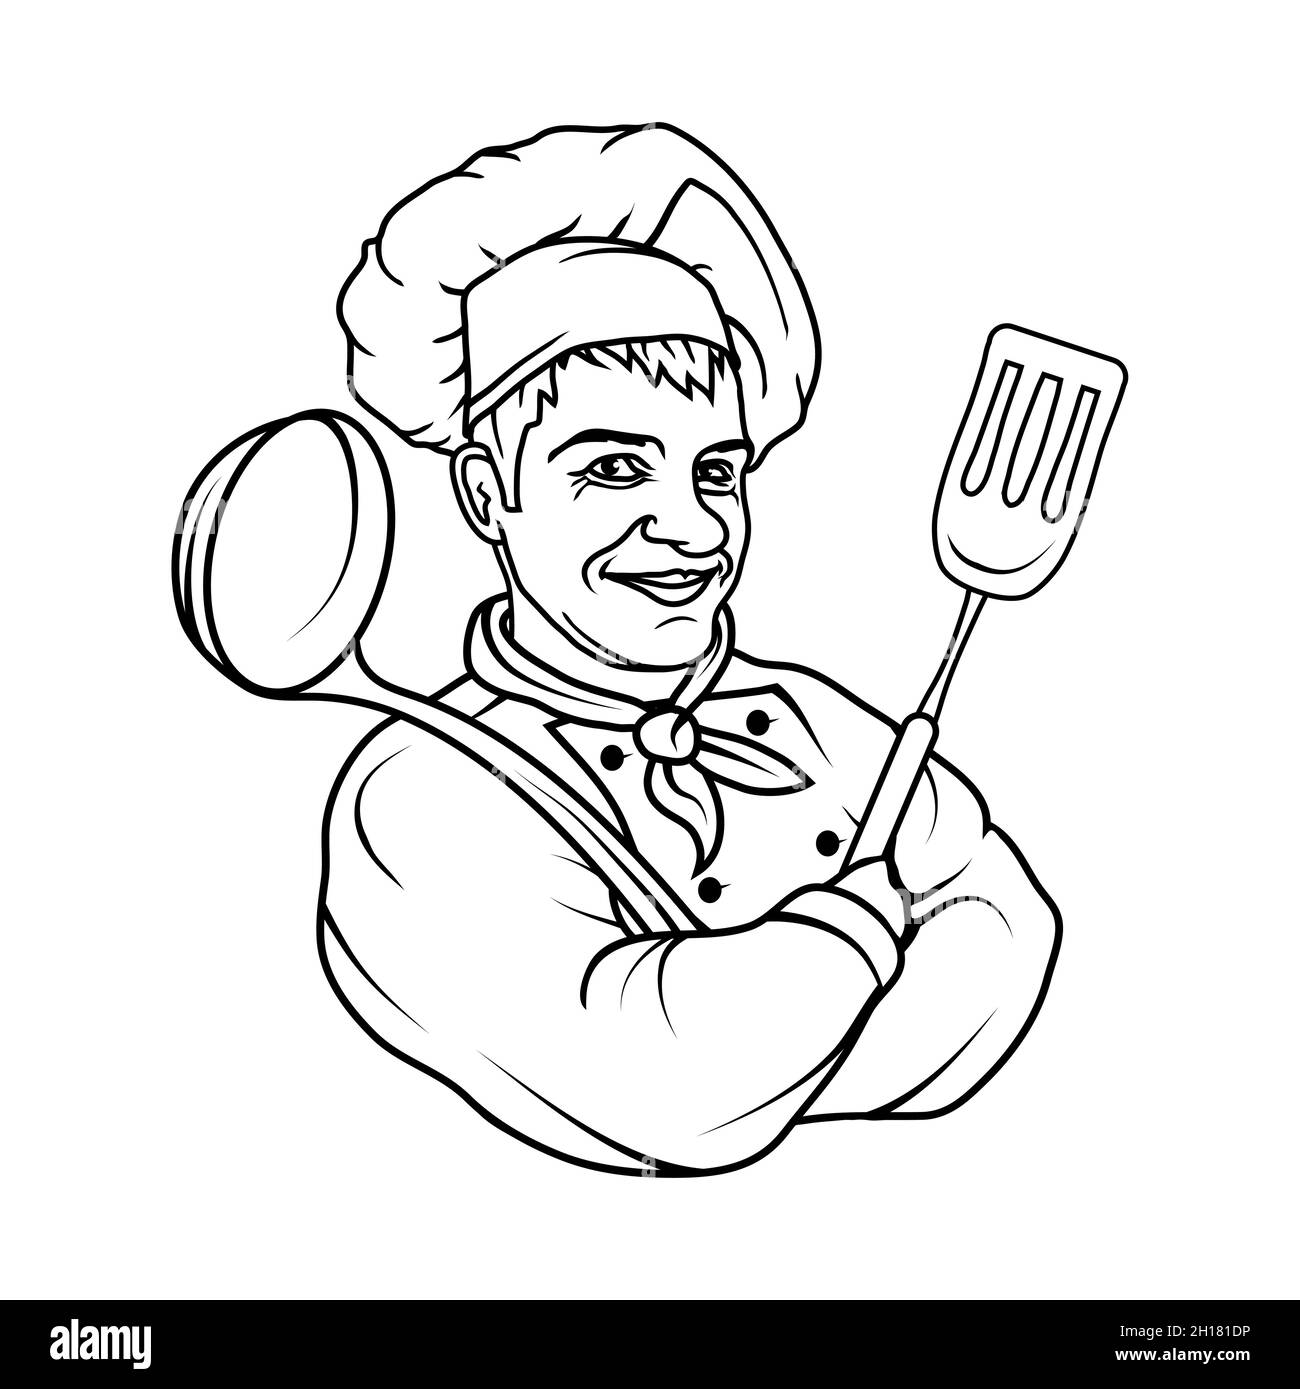 Chef cuisinier debout dans une posture différente.Chef en uniforme.Logo Cook.Chapeau de chef.Chef cuisinier professionnel Illustration de Vecteur